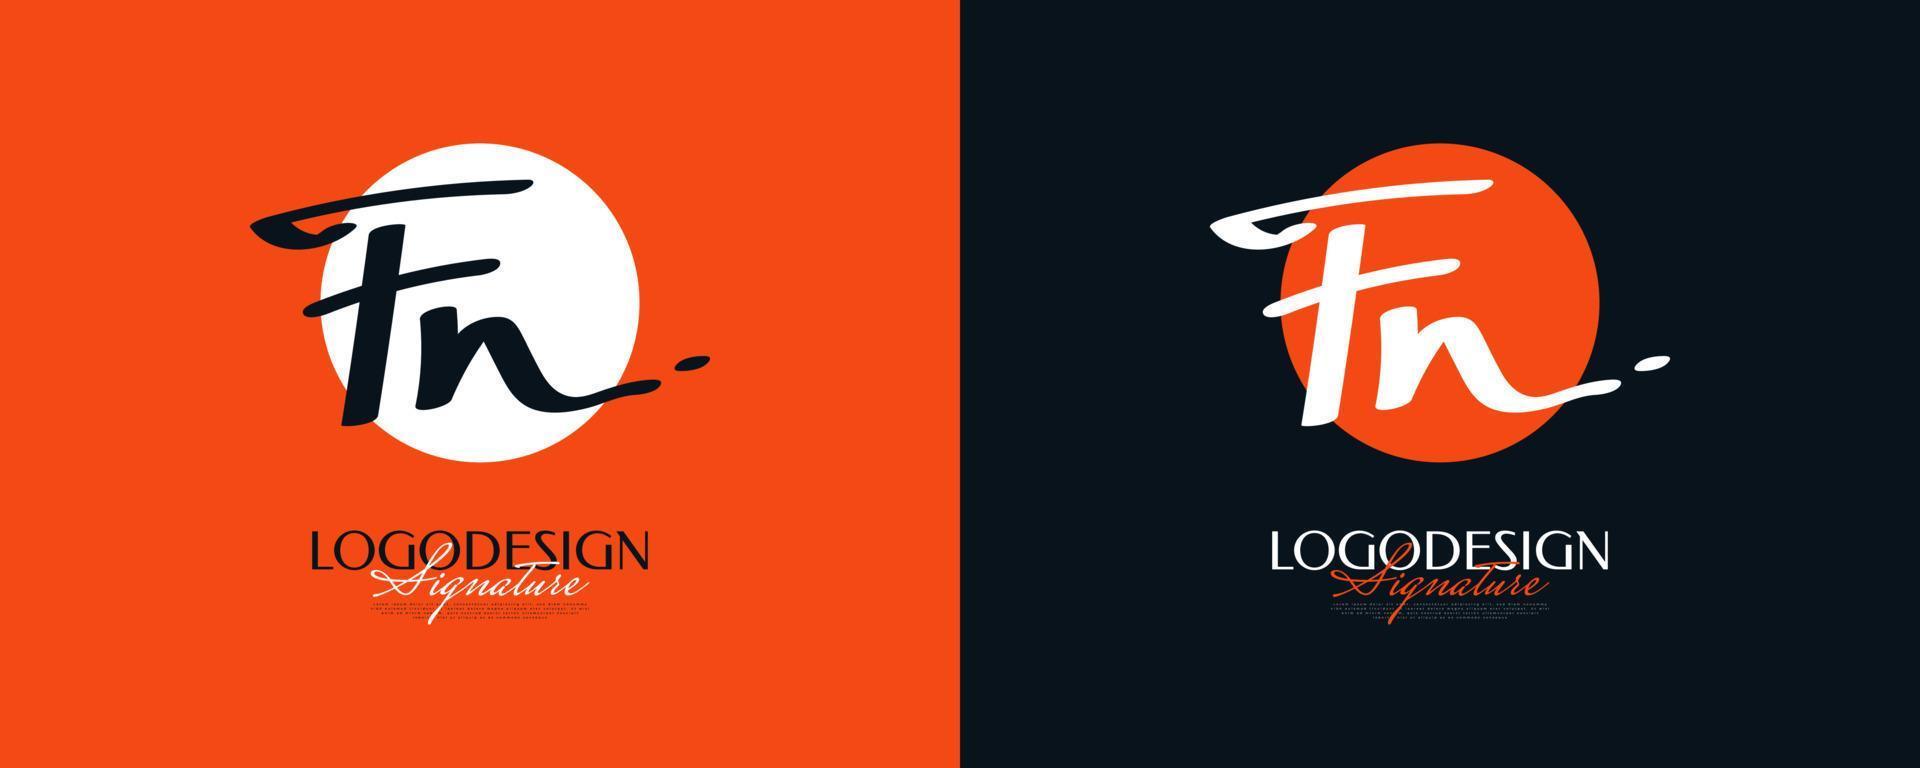 diseño inicial del logotipo f y n con un estilo de escritura elegante y minimalista. logotipo o símbolo de la firma fn para bodas, moda, joyería, boutique e identidad empresarial vector